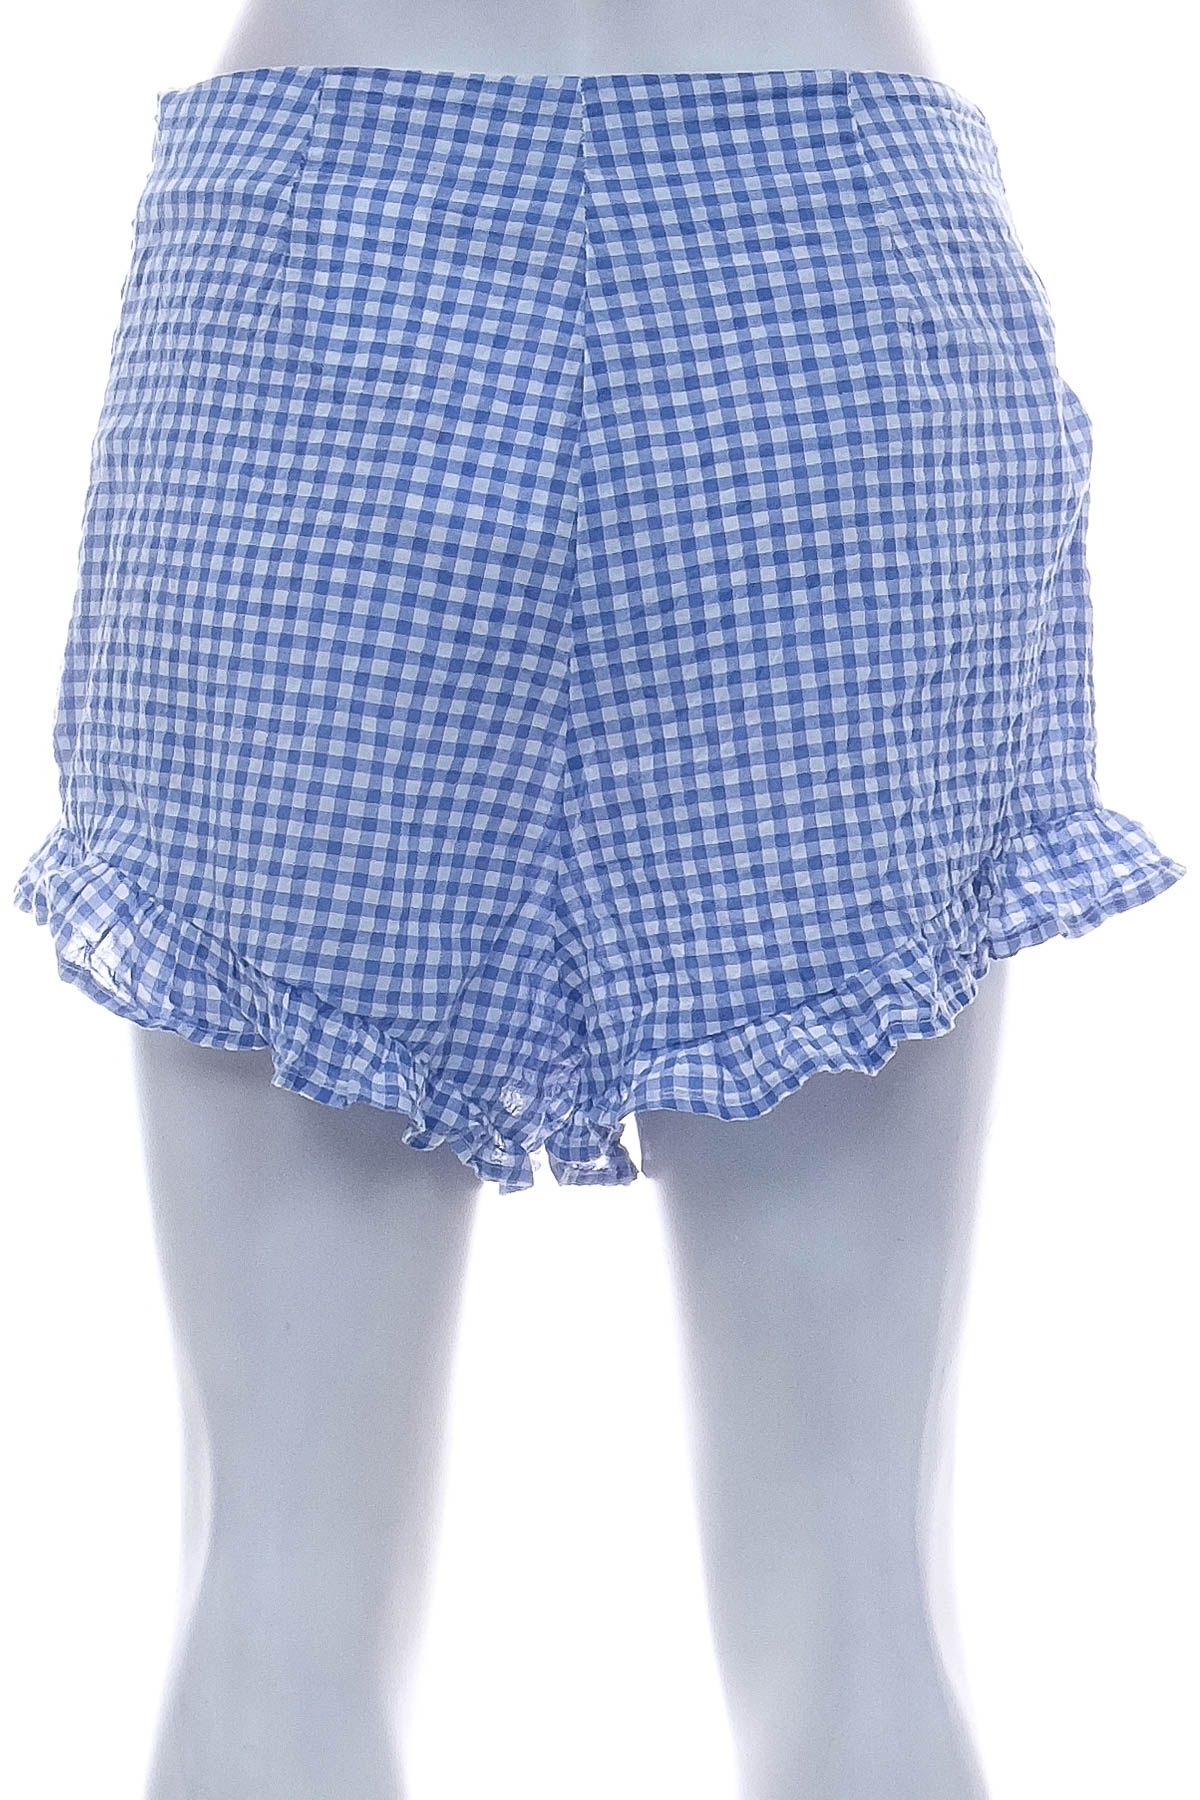 Female shorts - H&M - 1